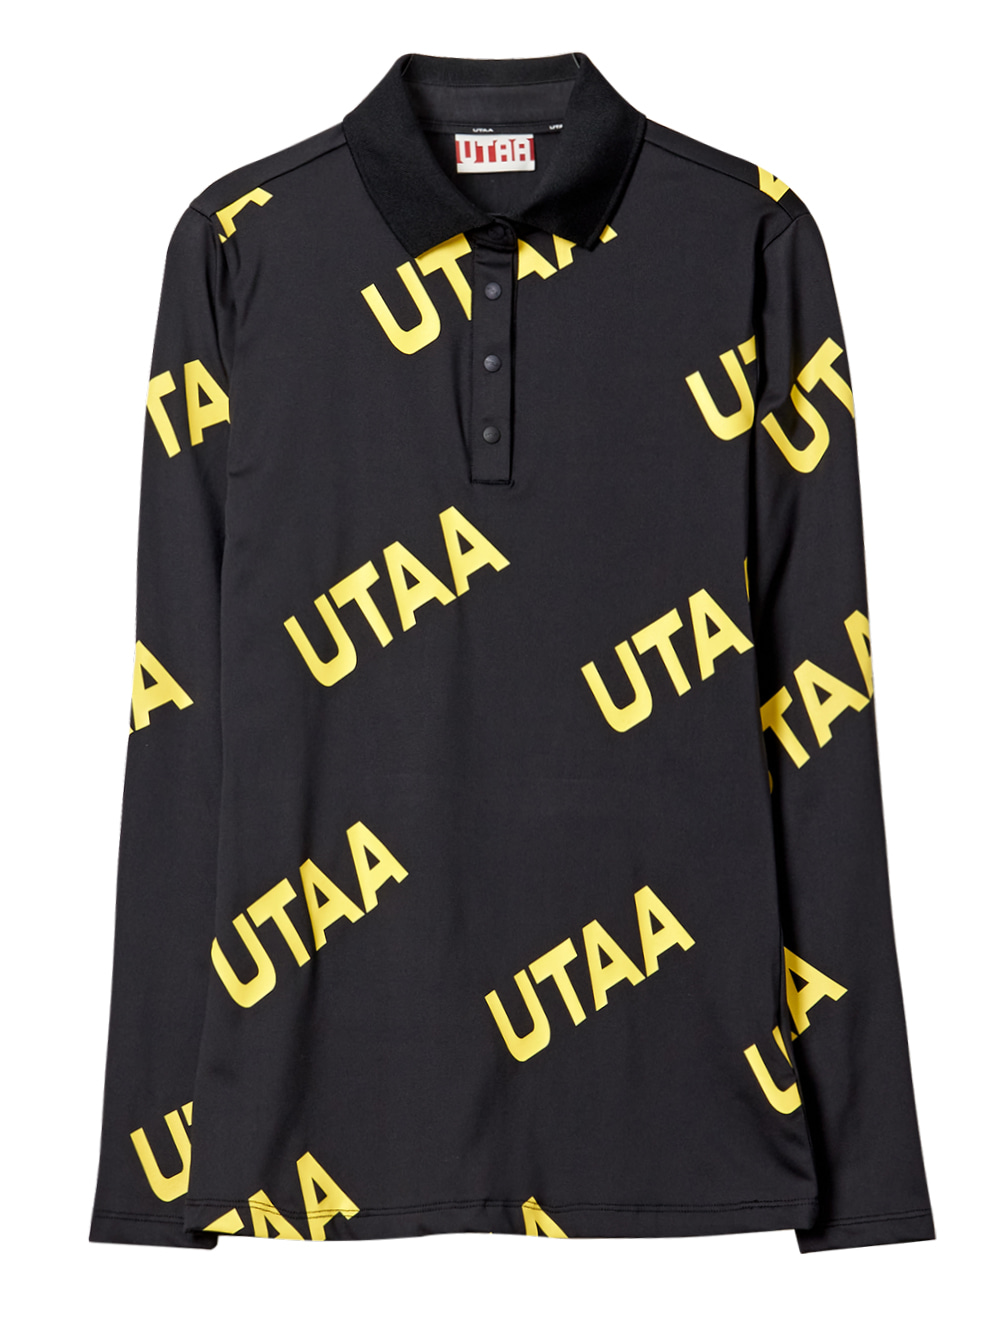 UTAA Logo Wave Sleeve : Womens (UB1TLF452BK)